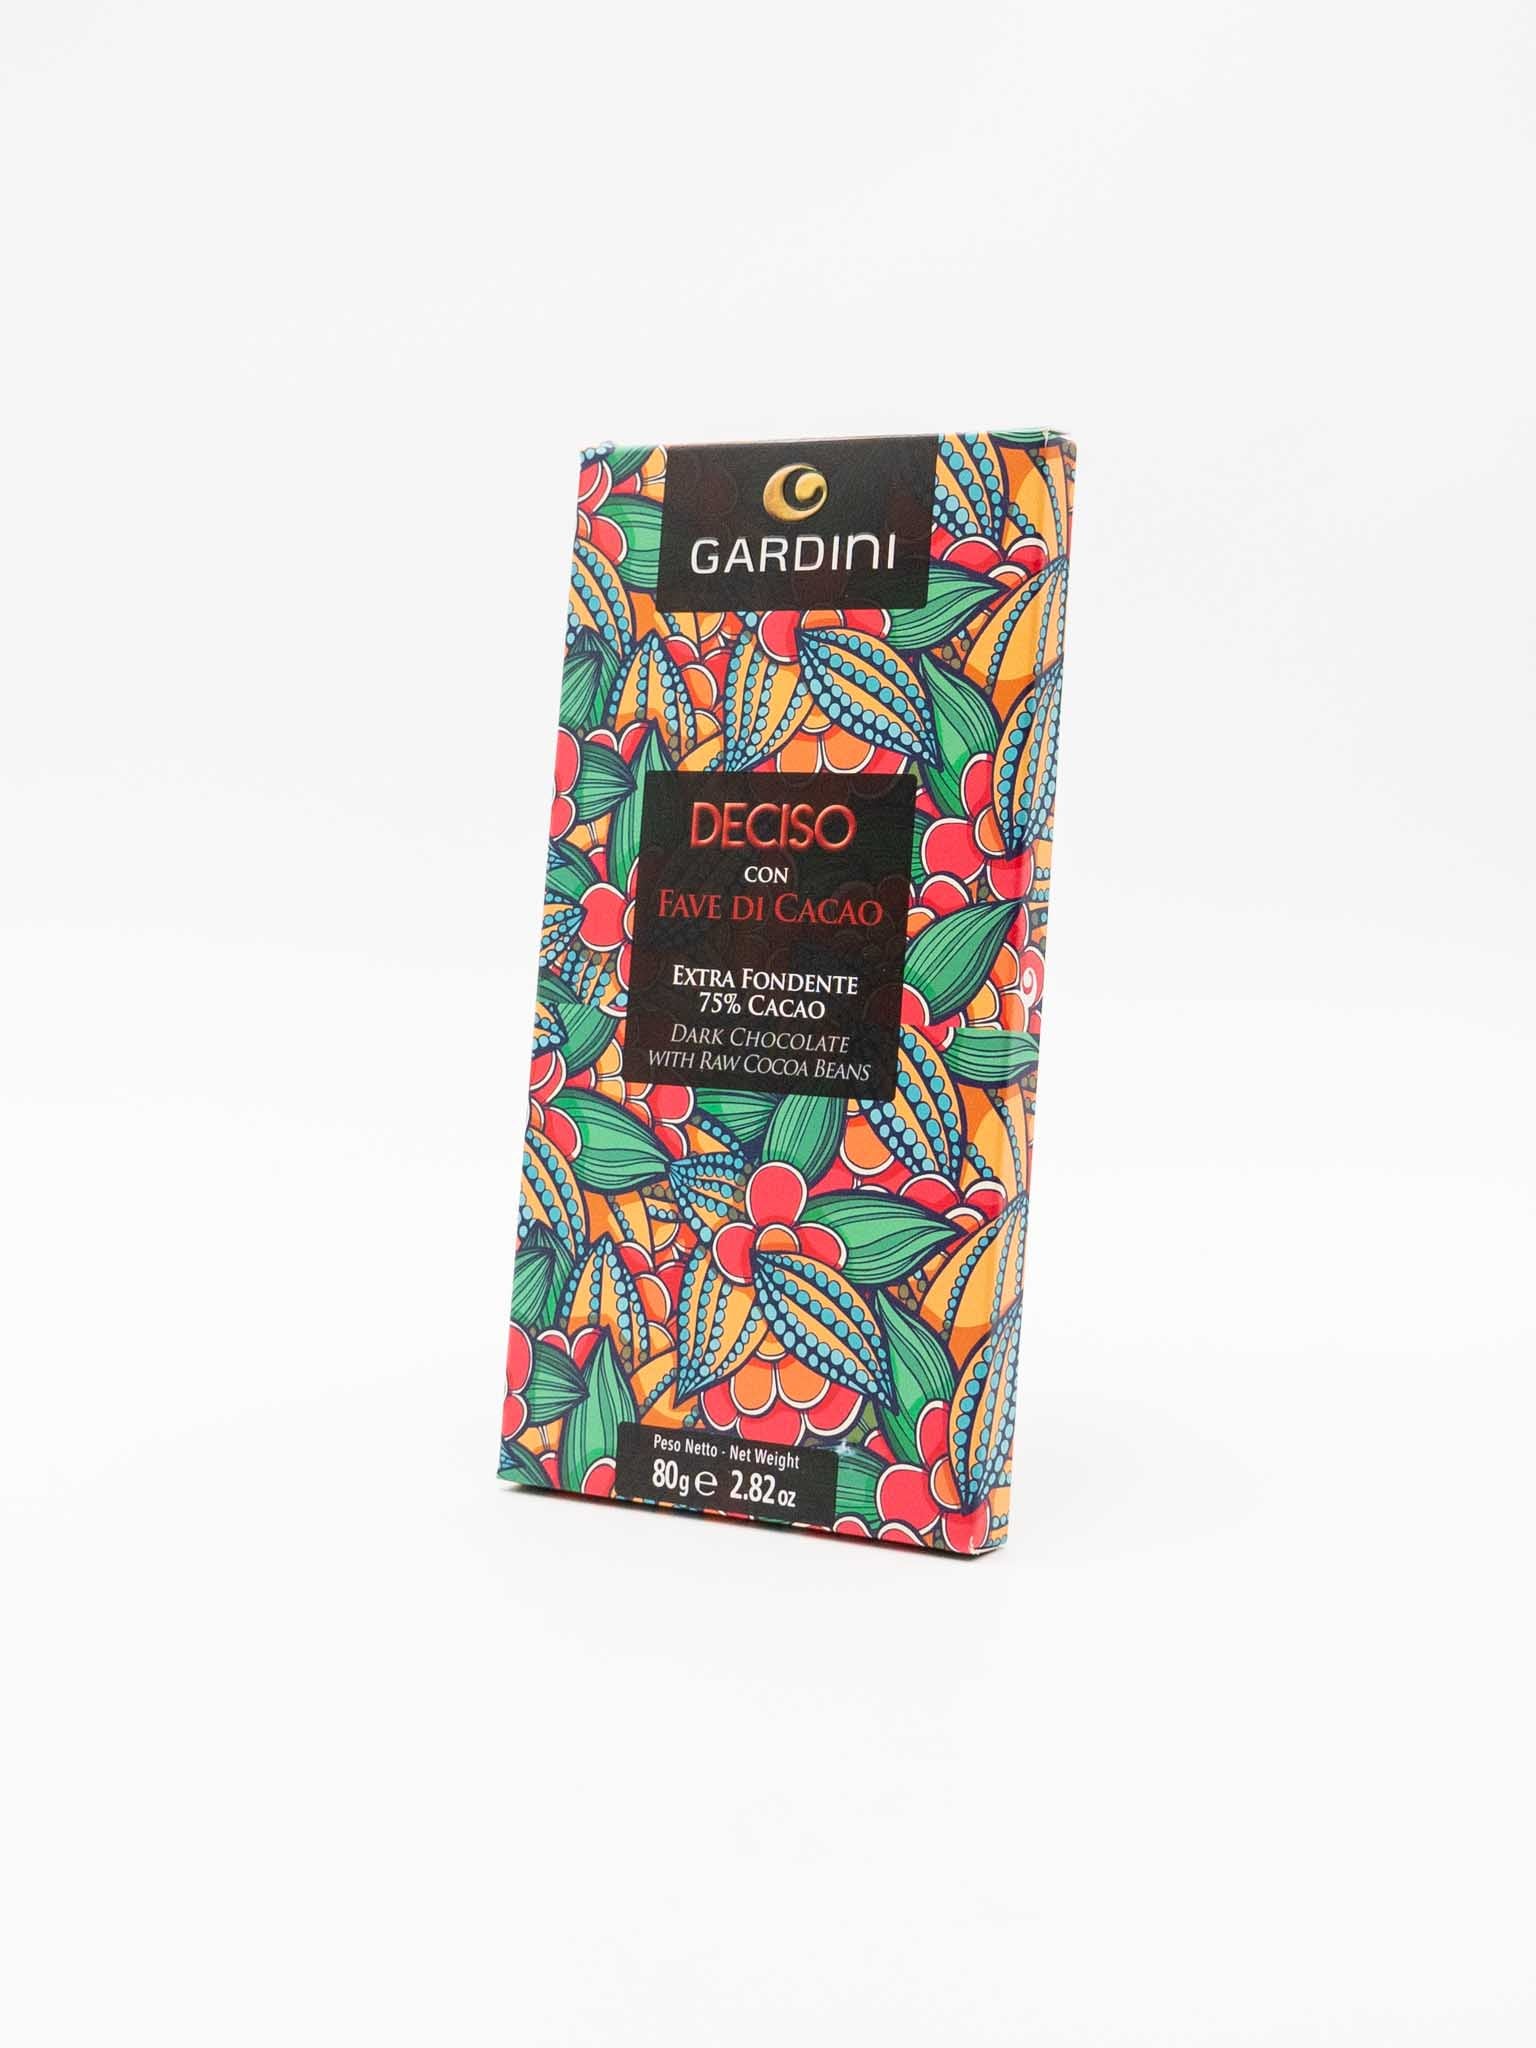 Tavoletta Extra Fondente 75% Cacao con Fave di Cacao "Deciso"- Gardini | 80g